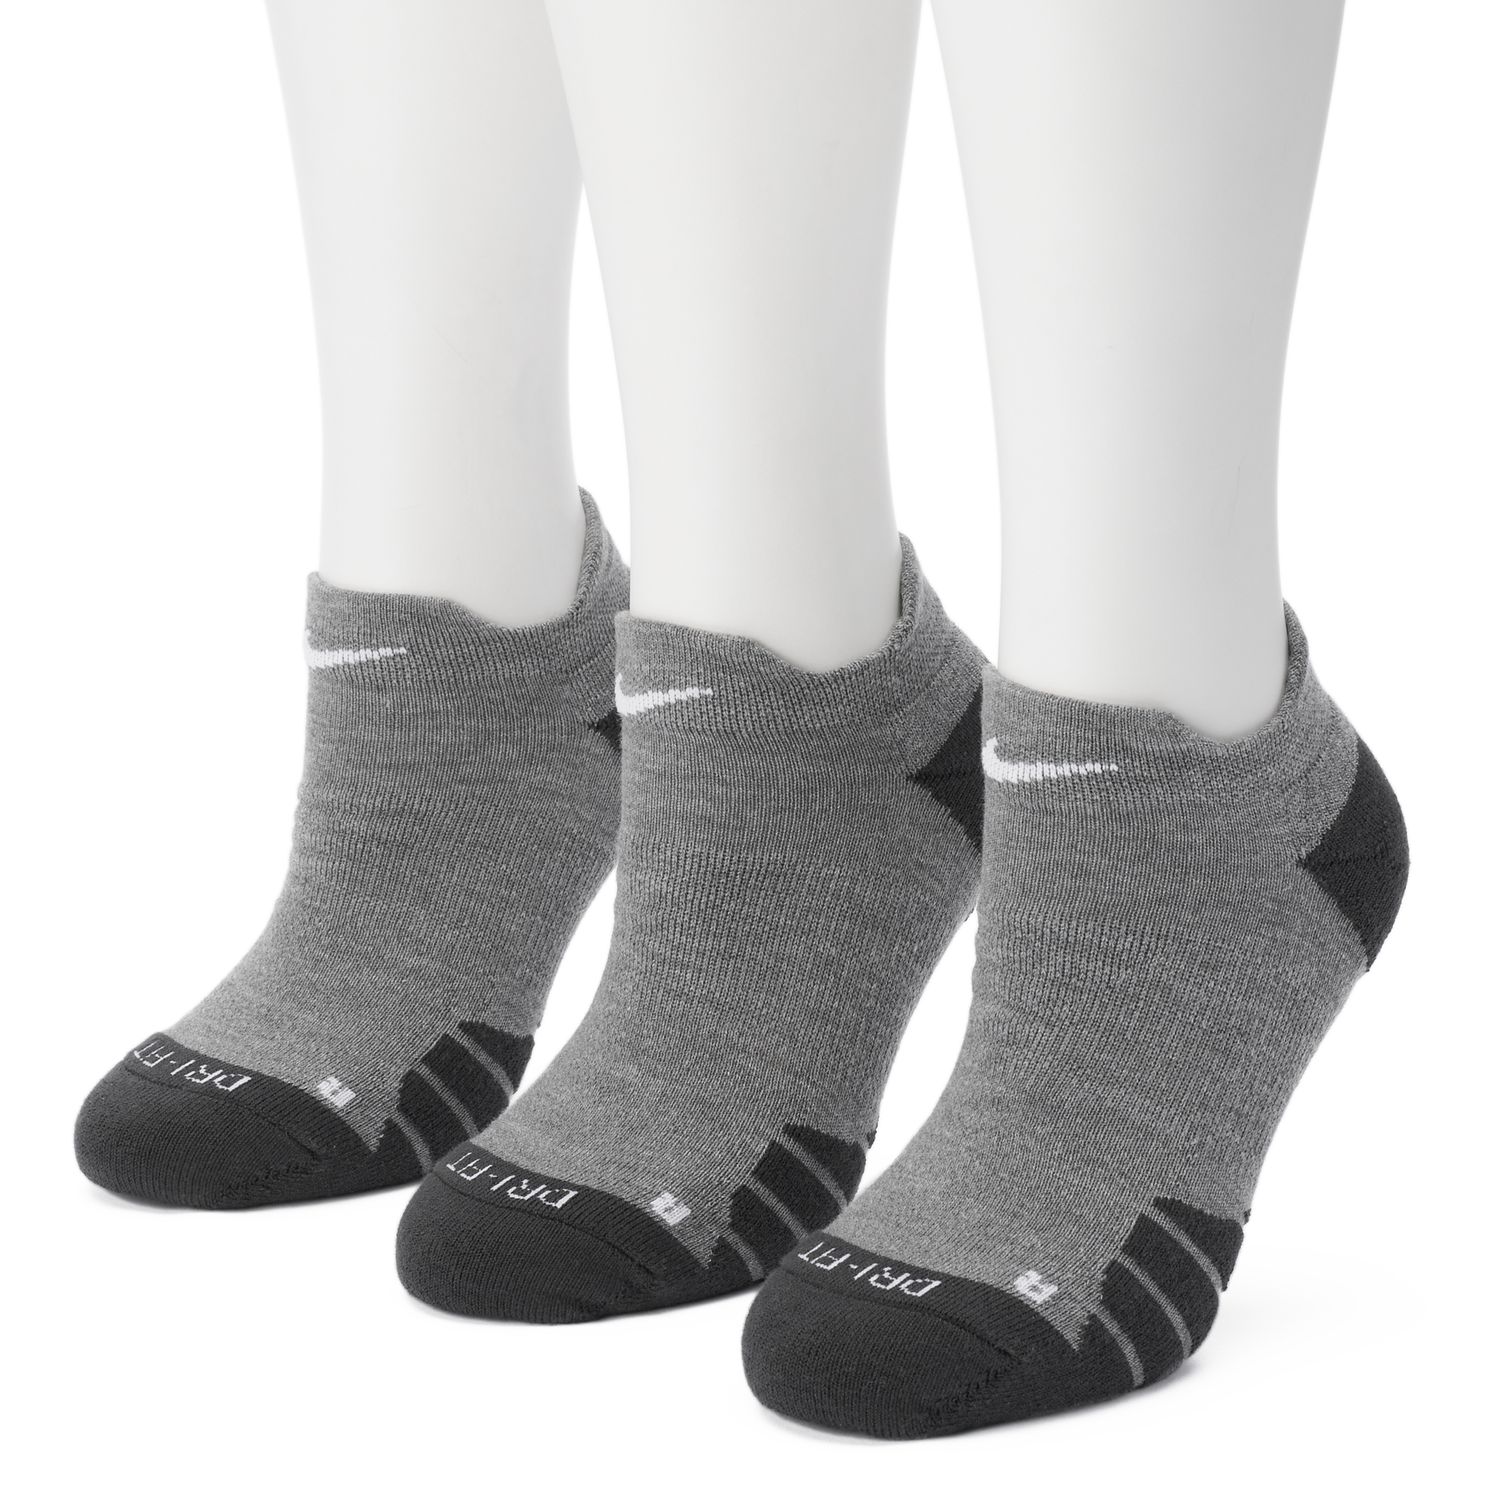 women's low cut nike socks